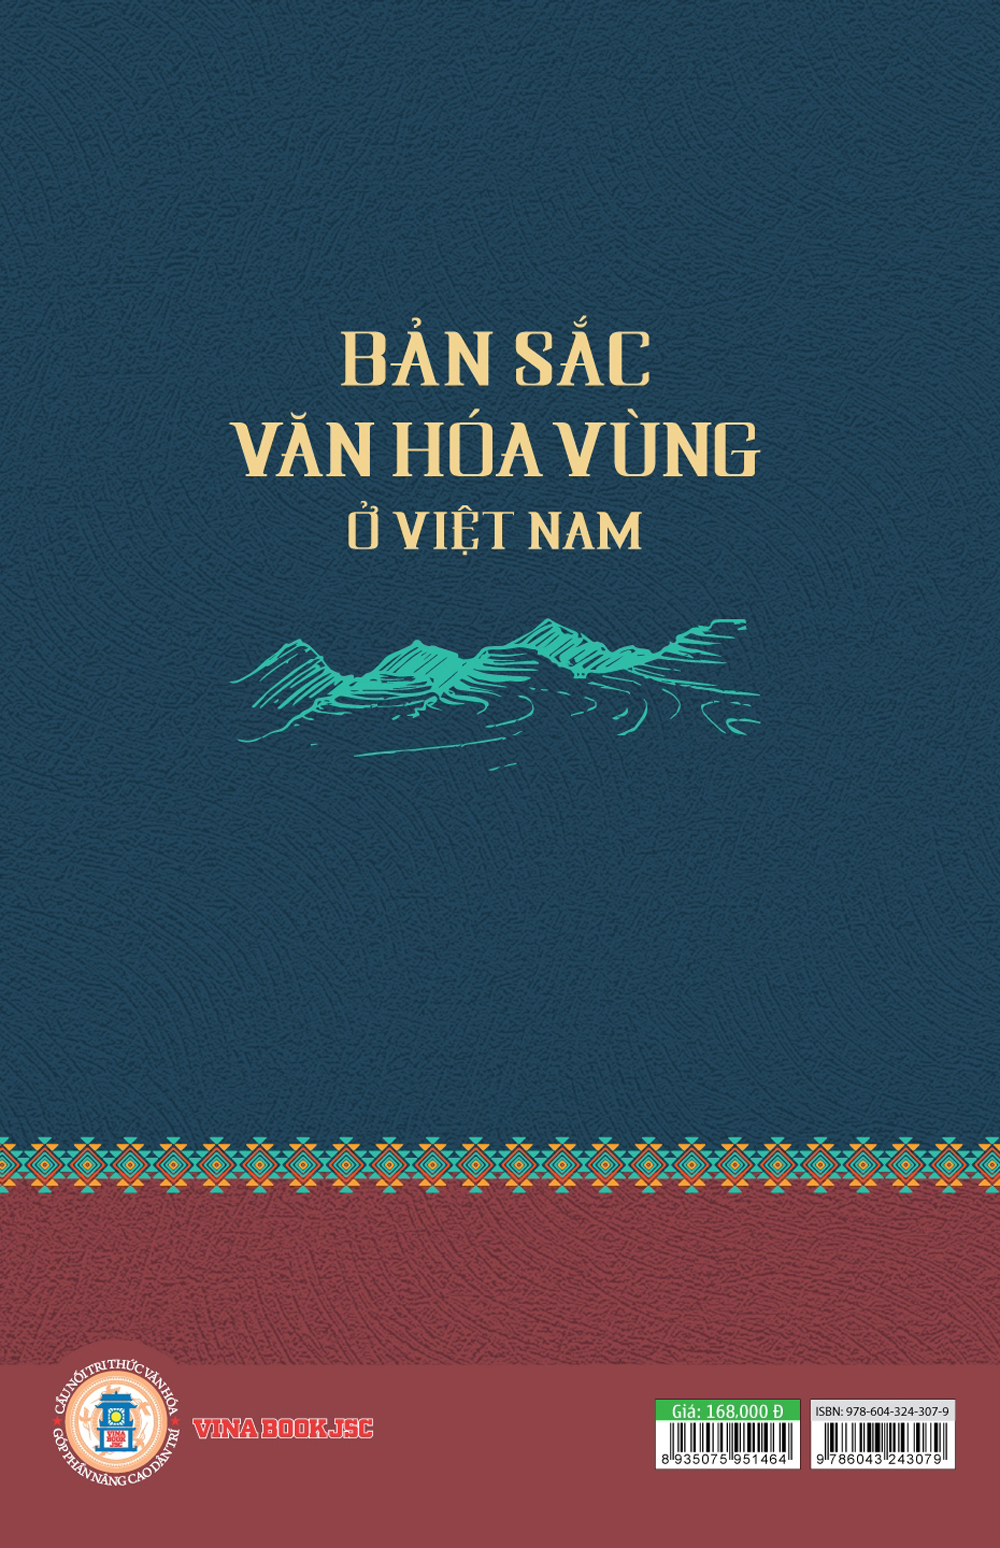 Bản Sắc Văn Hóa Vùng Ở Việt Nam